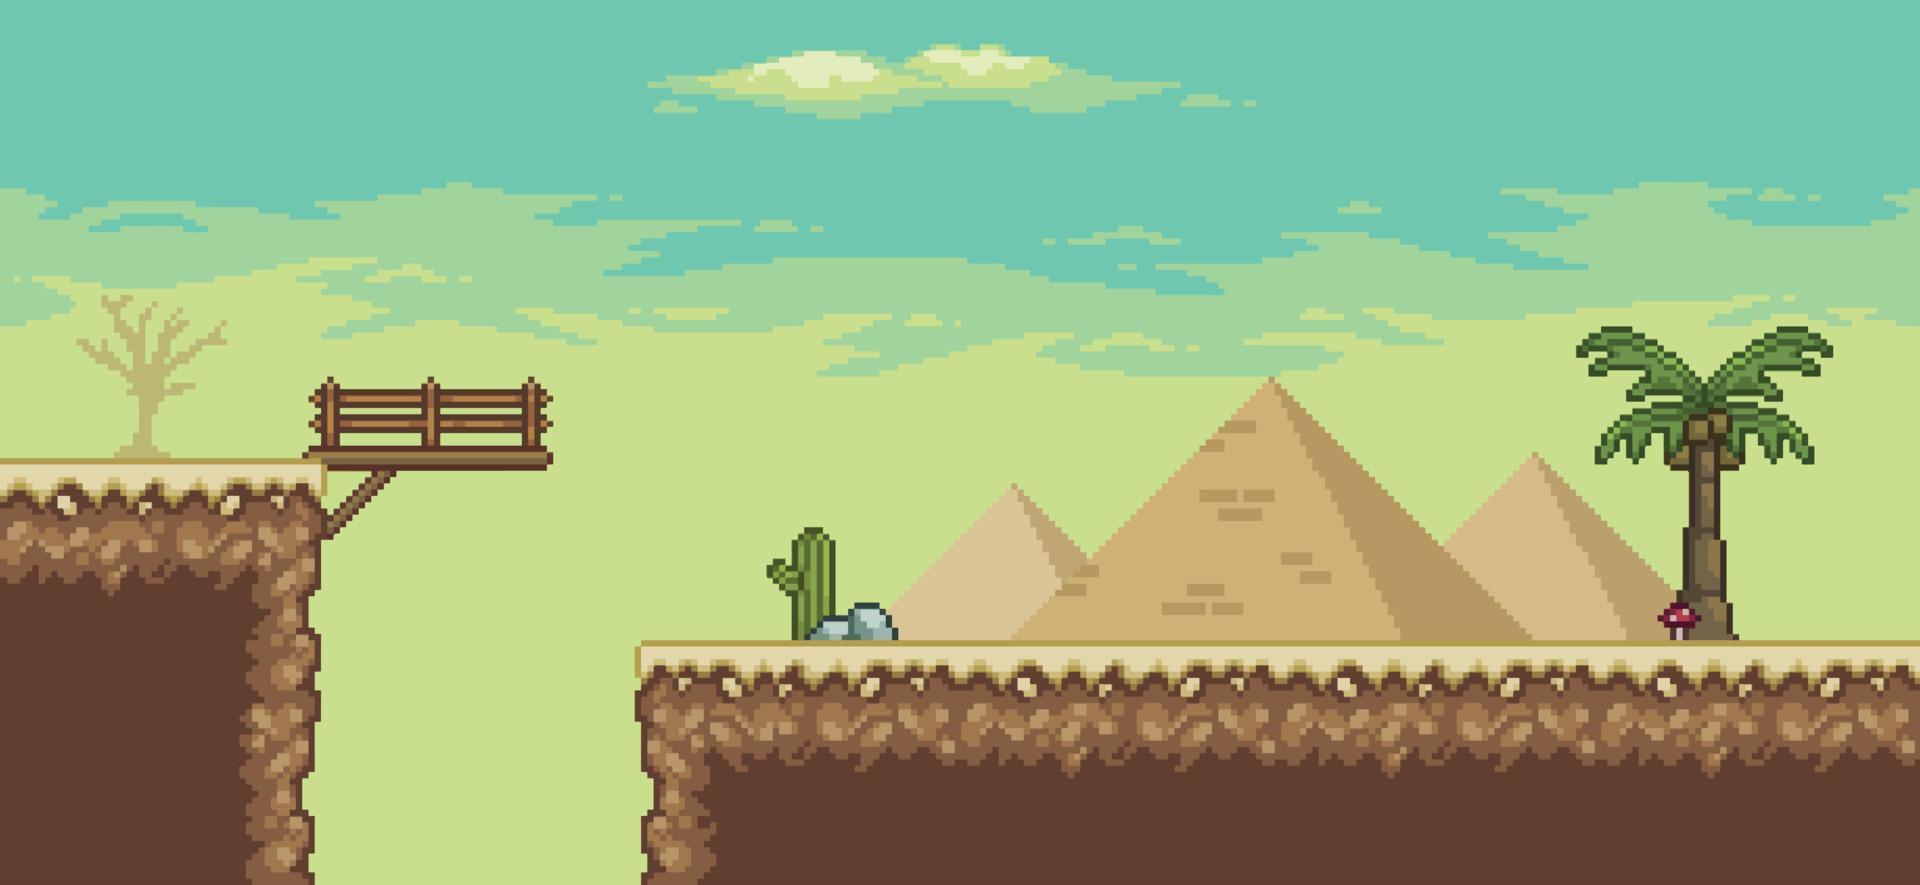 scène de jeu pixel art désert avec, pyramide, pont, palmier, cactus, fond de carte de direction 8bit vecteur